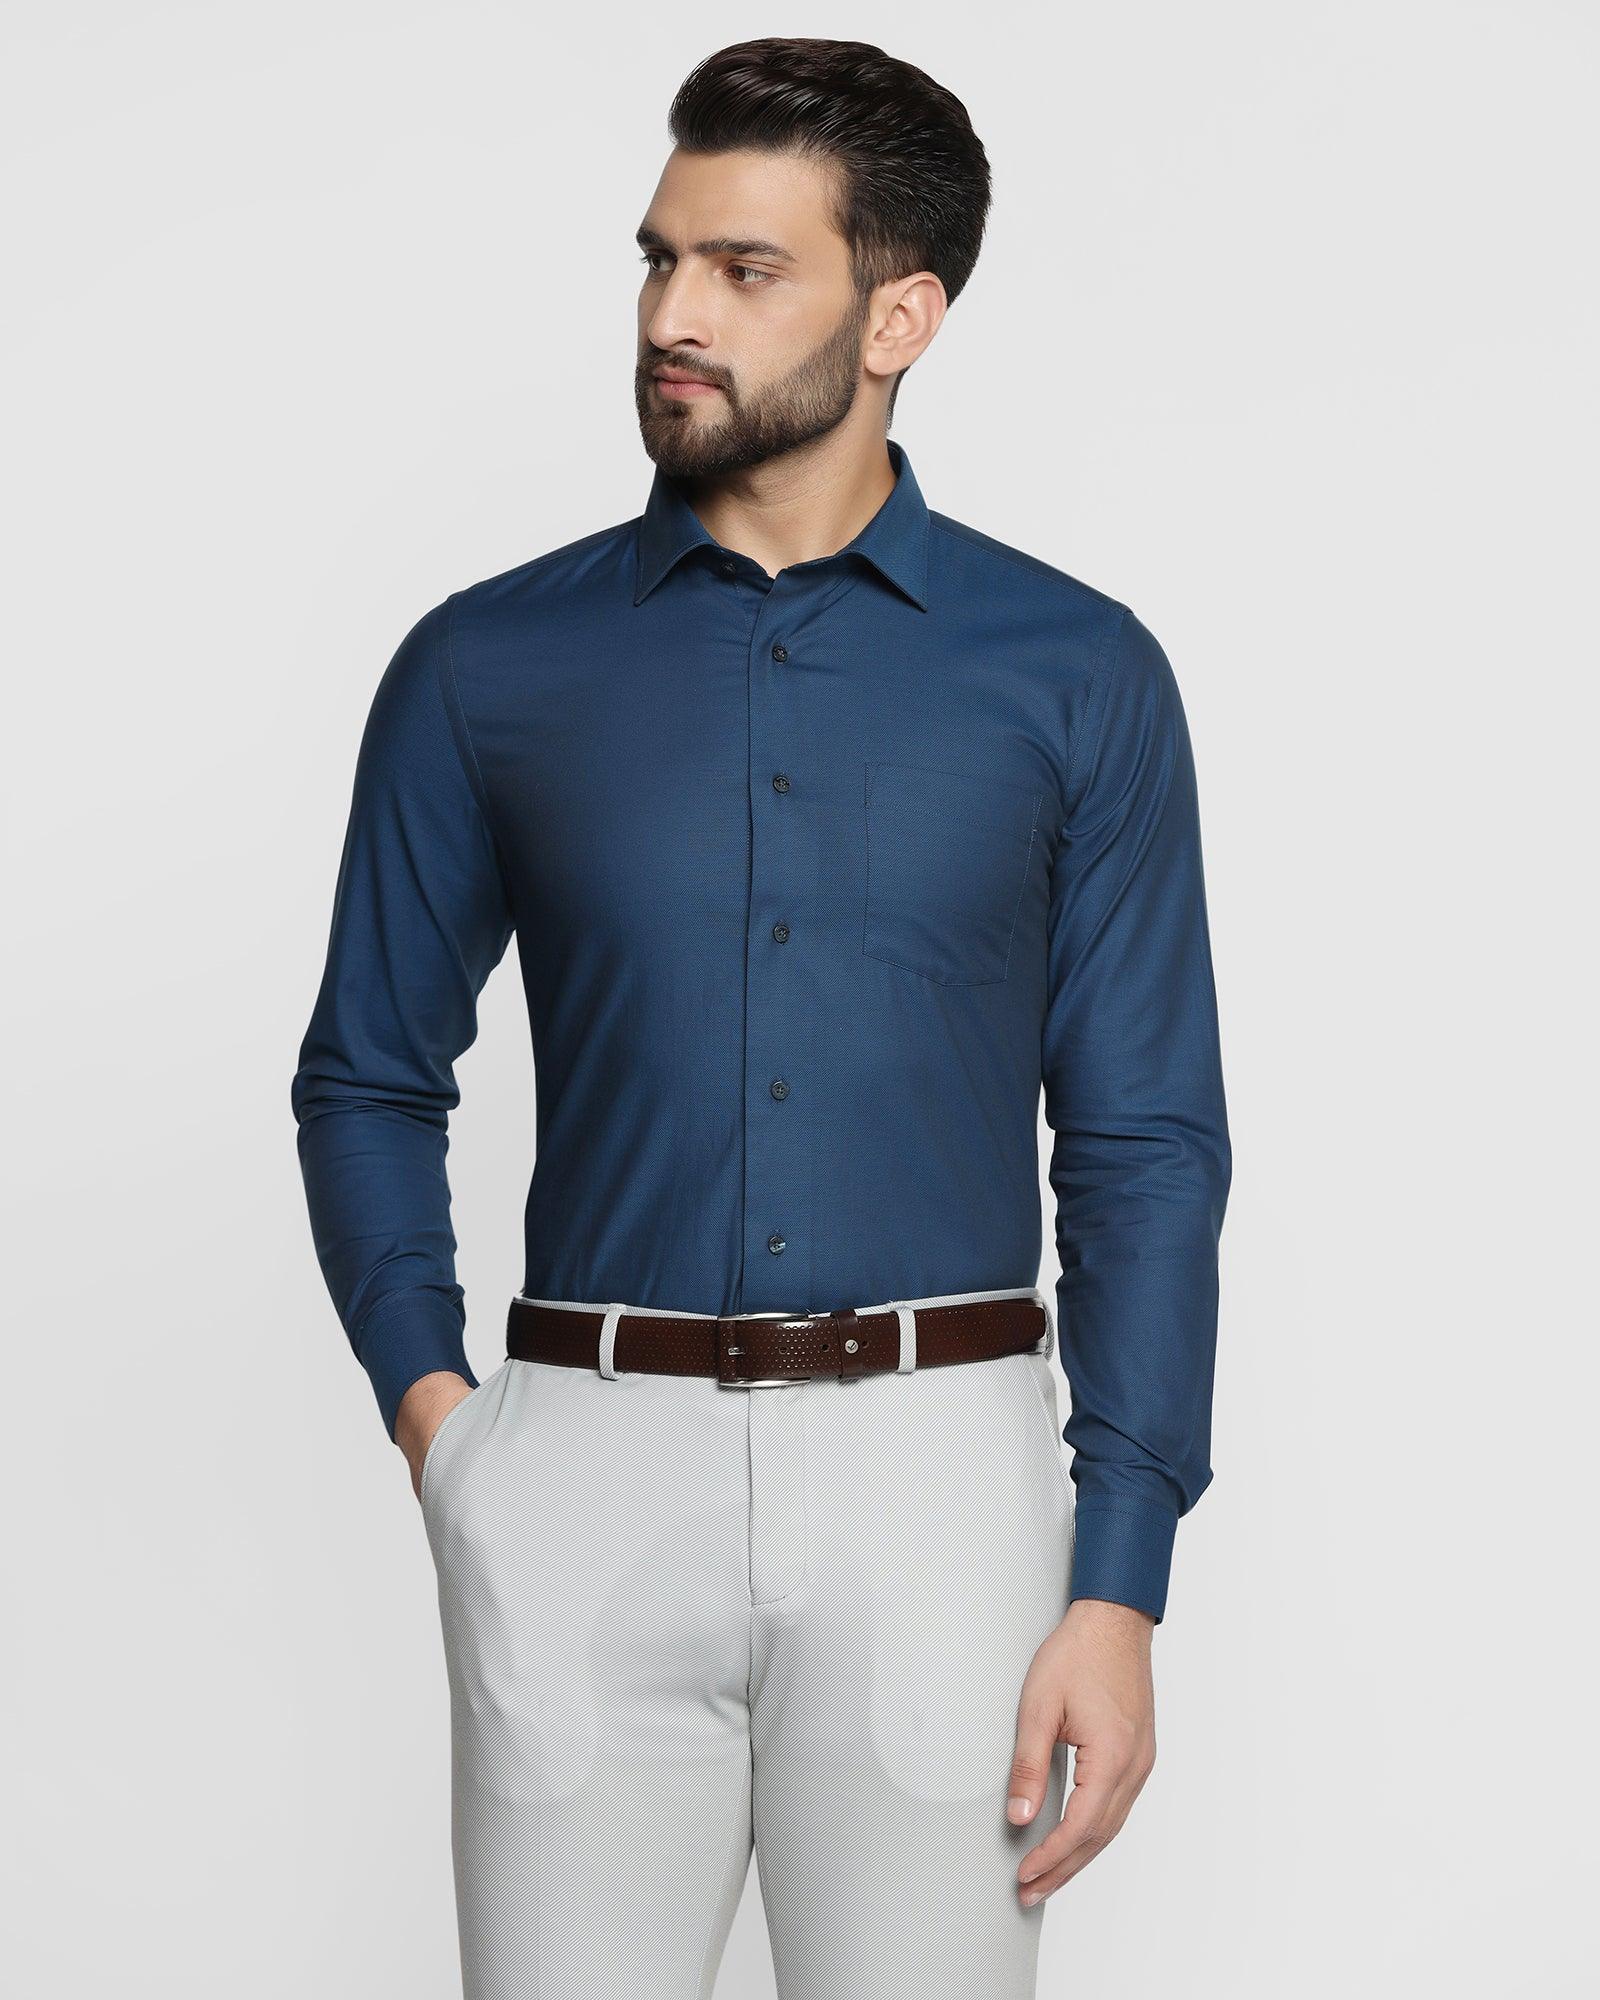 Formal Cobalt Textured Shirt - Artal